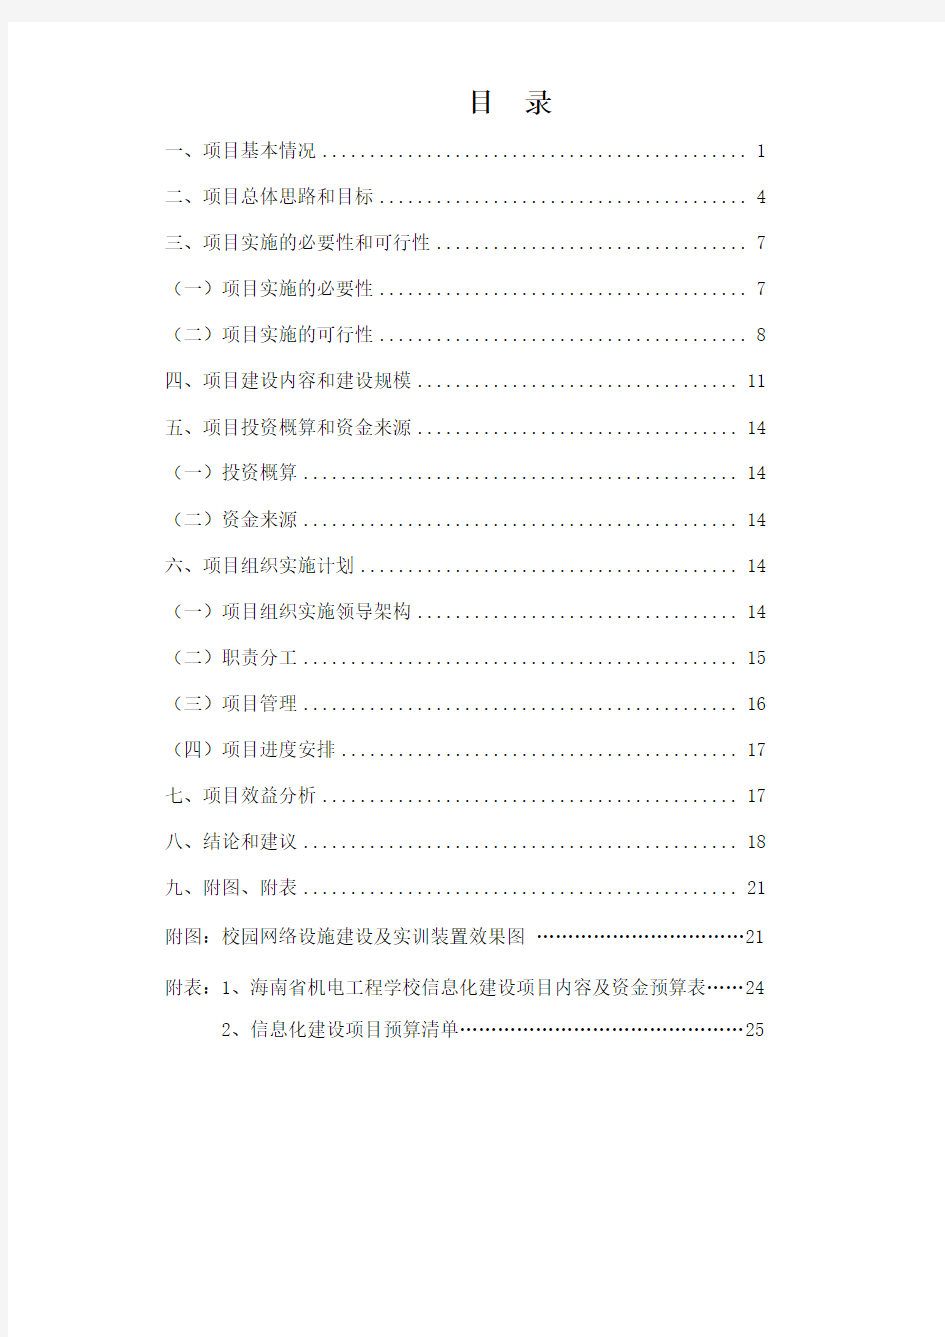 海南省机电工程学校信息化建设项目申请报告